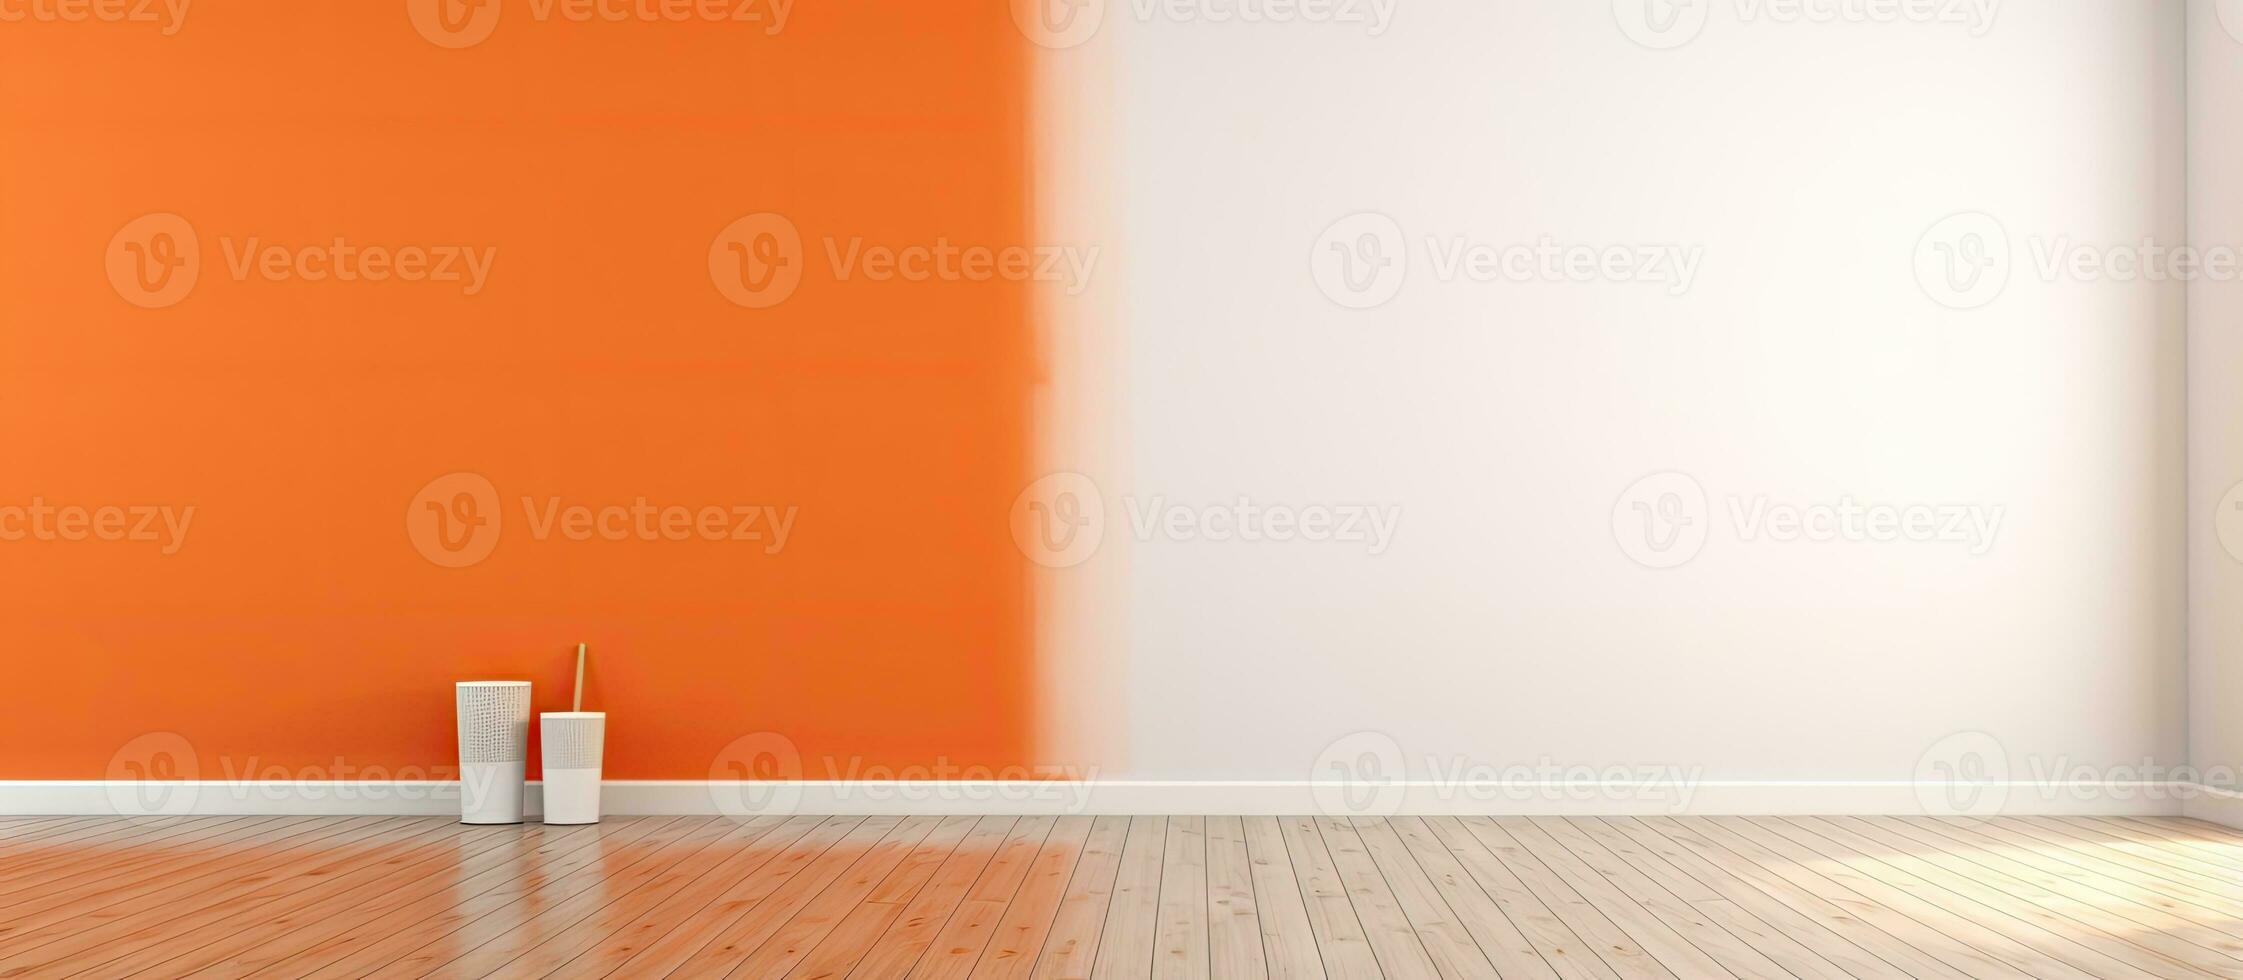 minimalistisk interiör design med målad vägg trä- golv tömma rum illustration foto